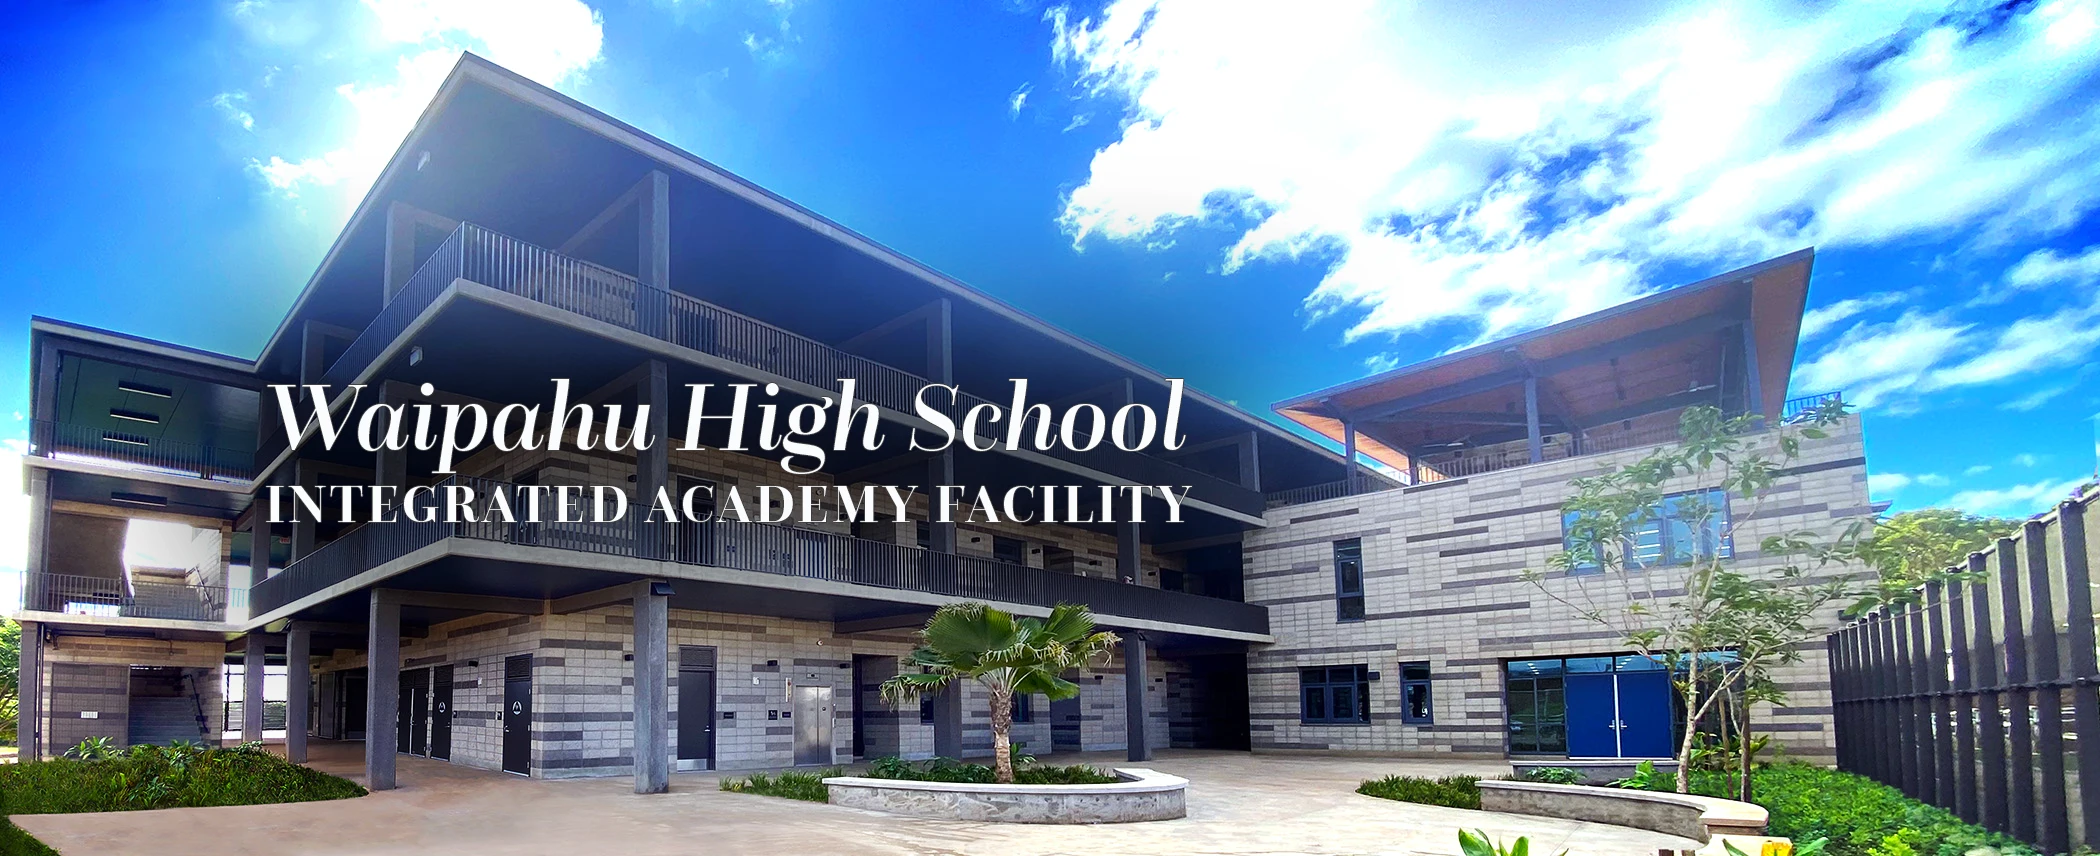 Waipahu High School Integrated Academy Facility exterior